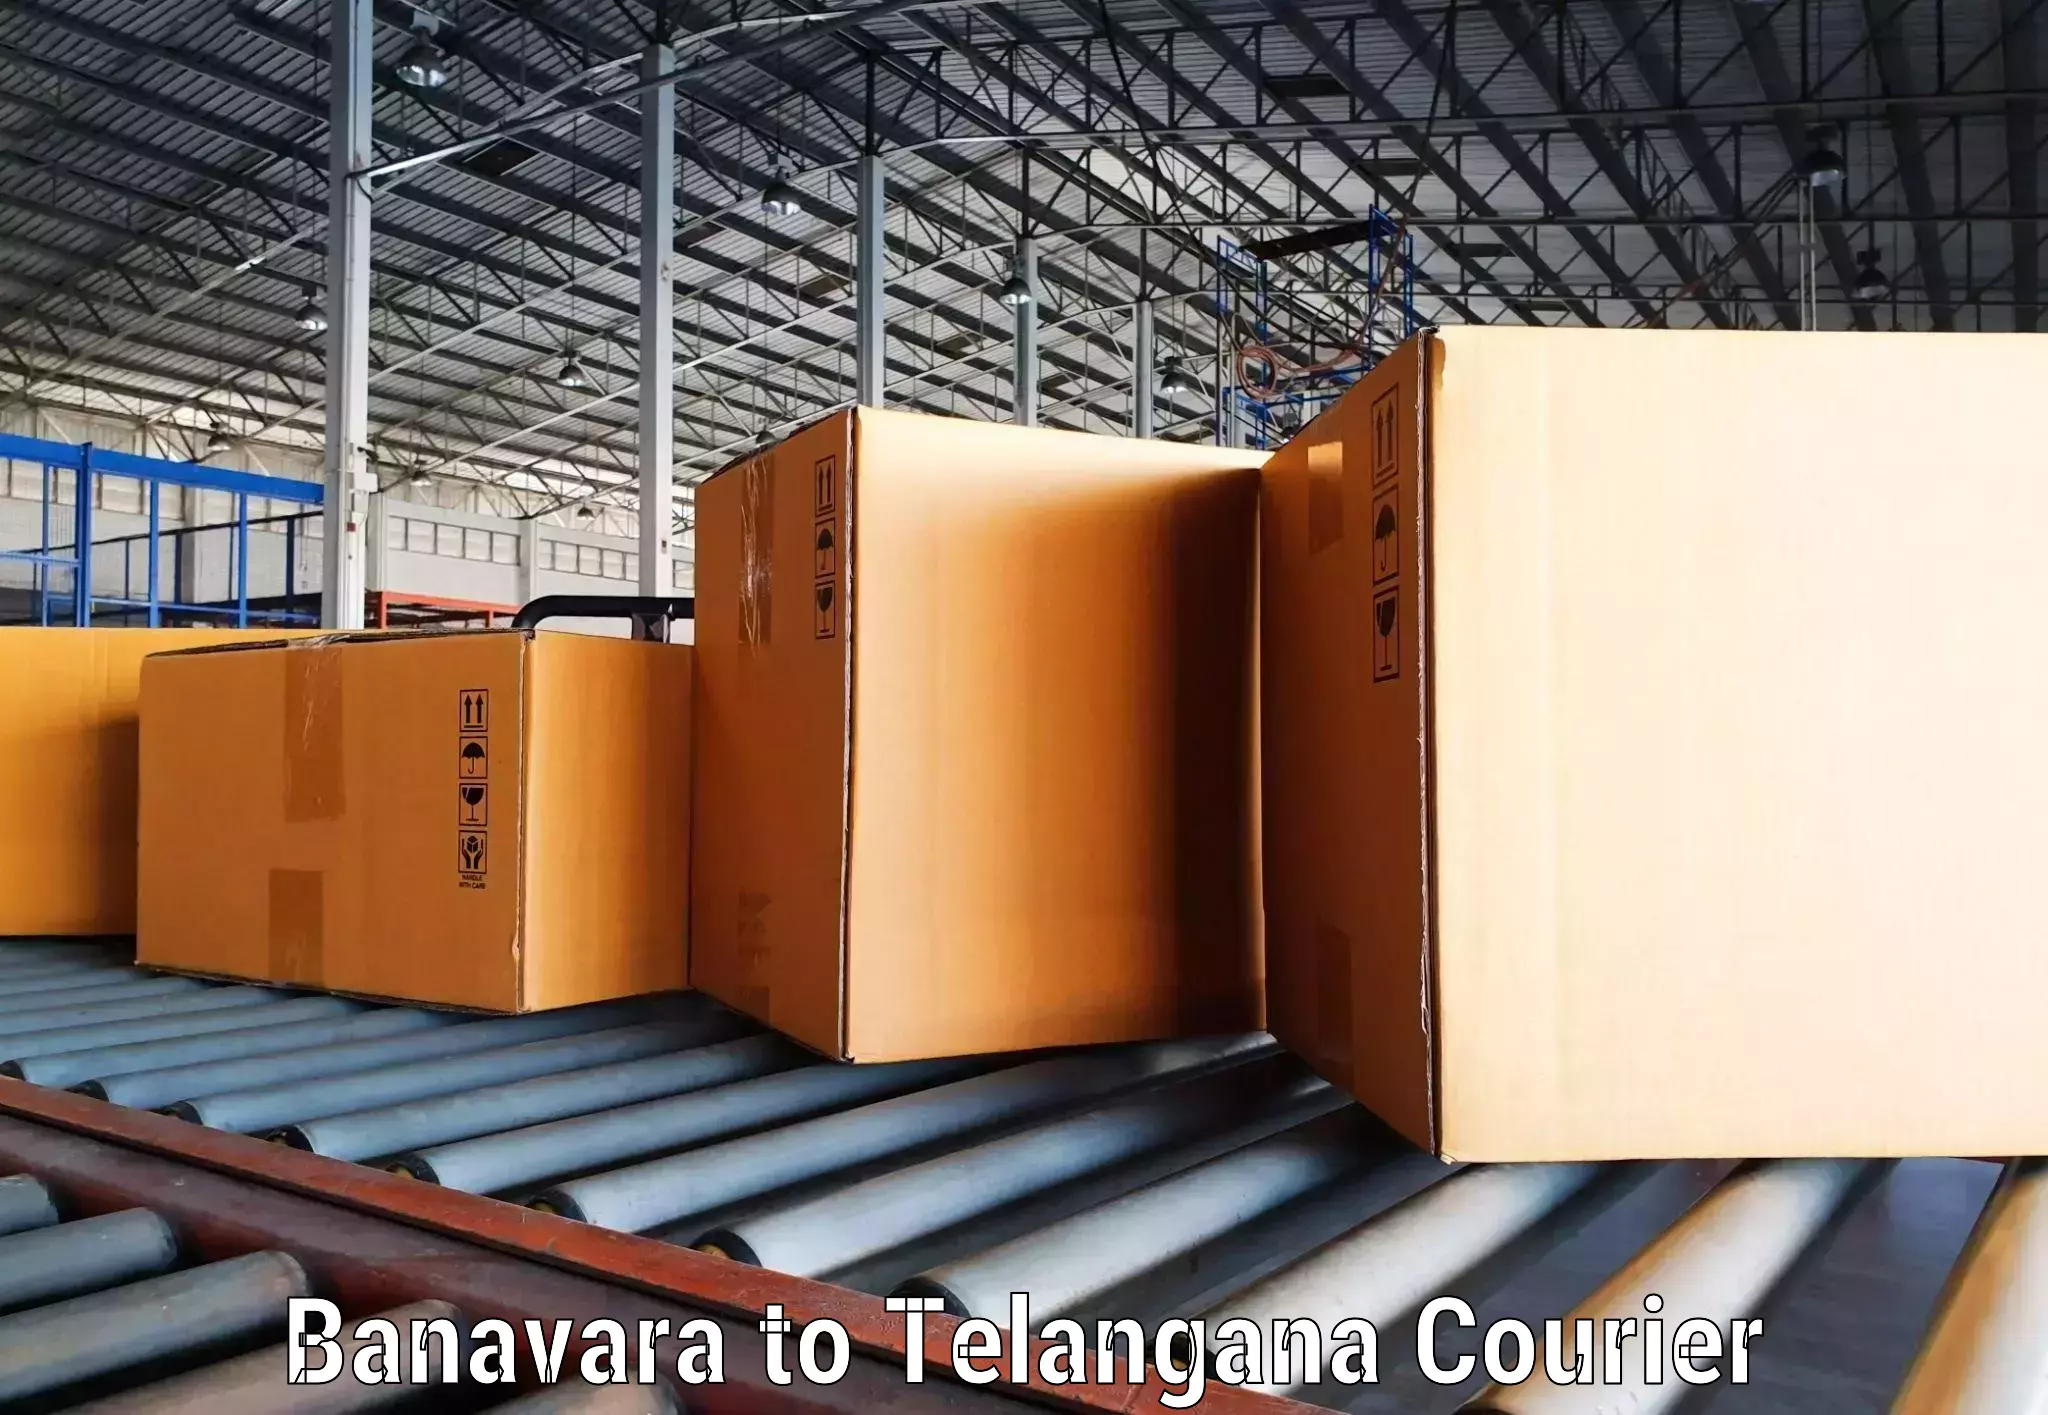 Customer-centric shipping Banavara to Tadvai